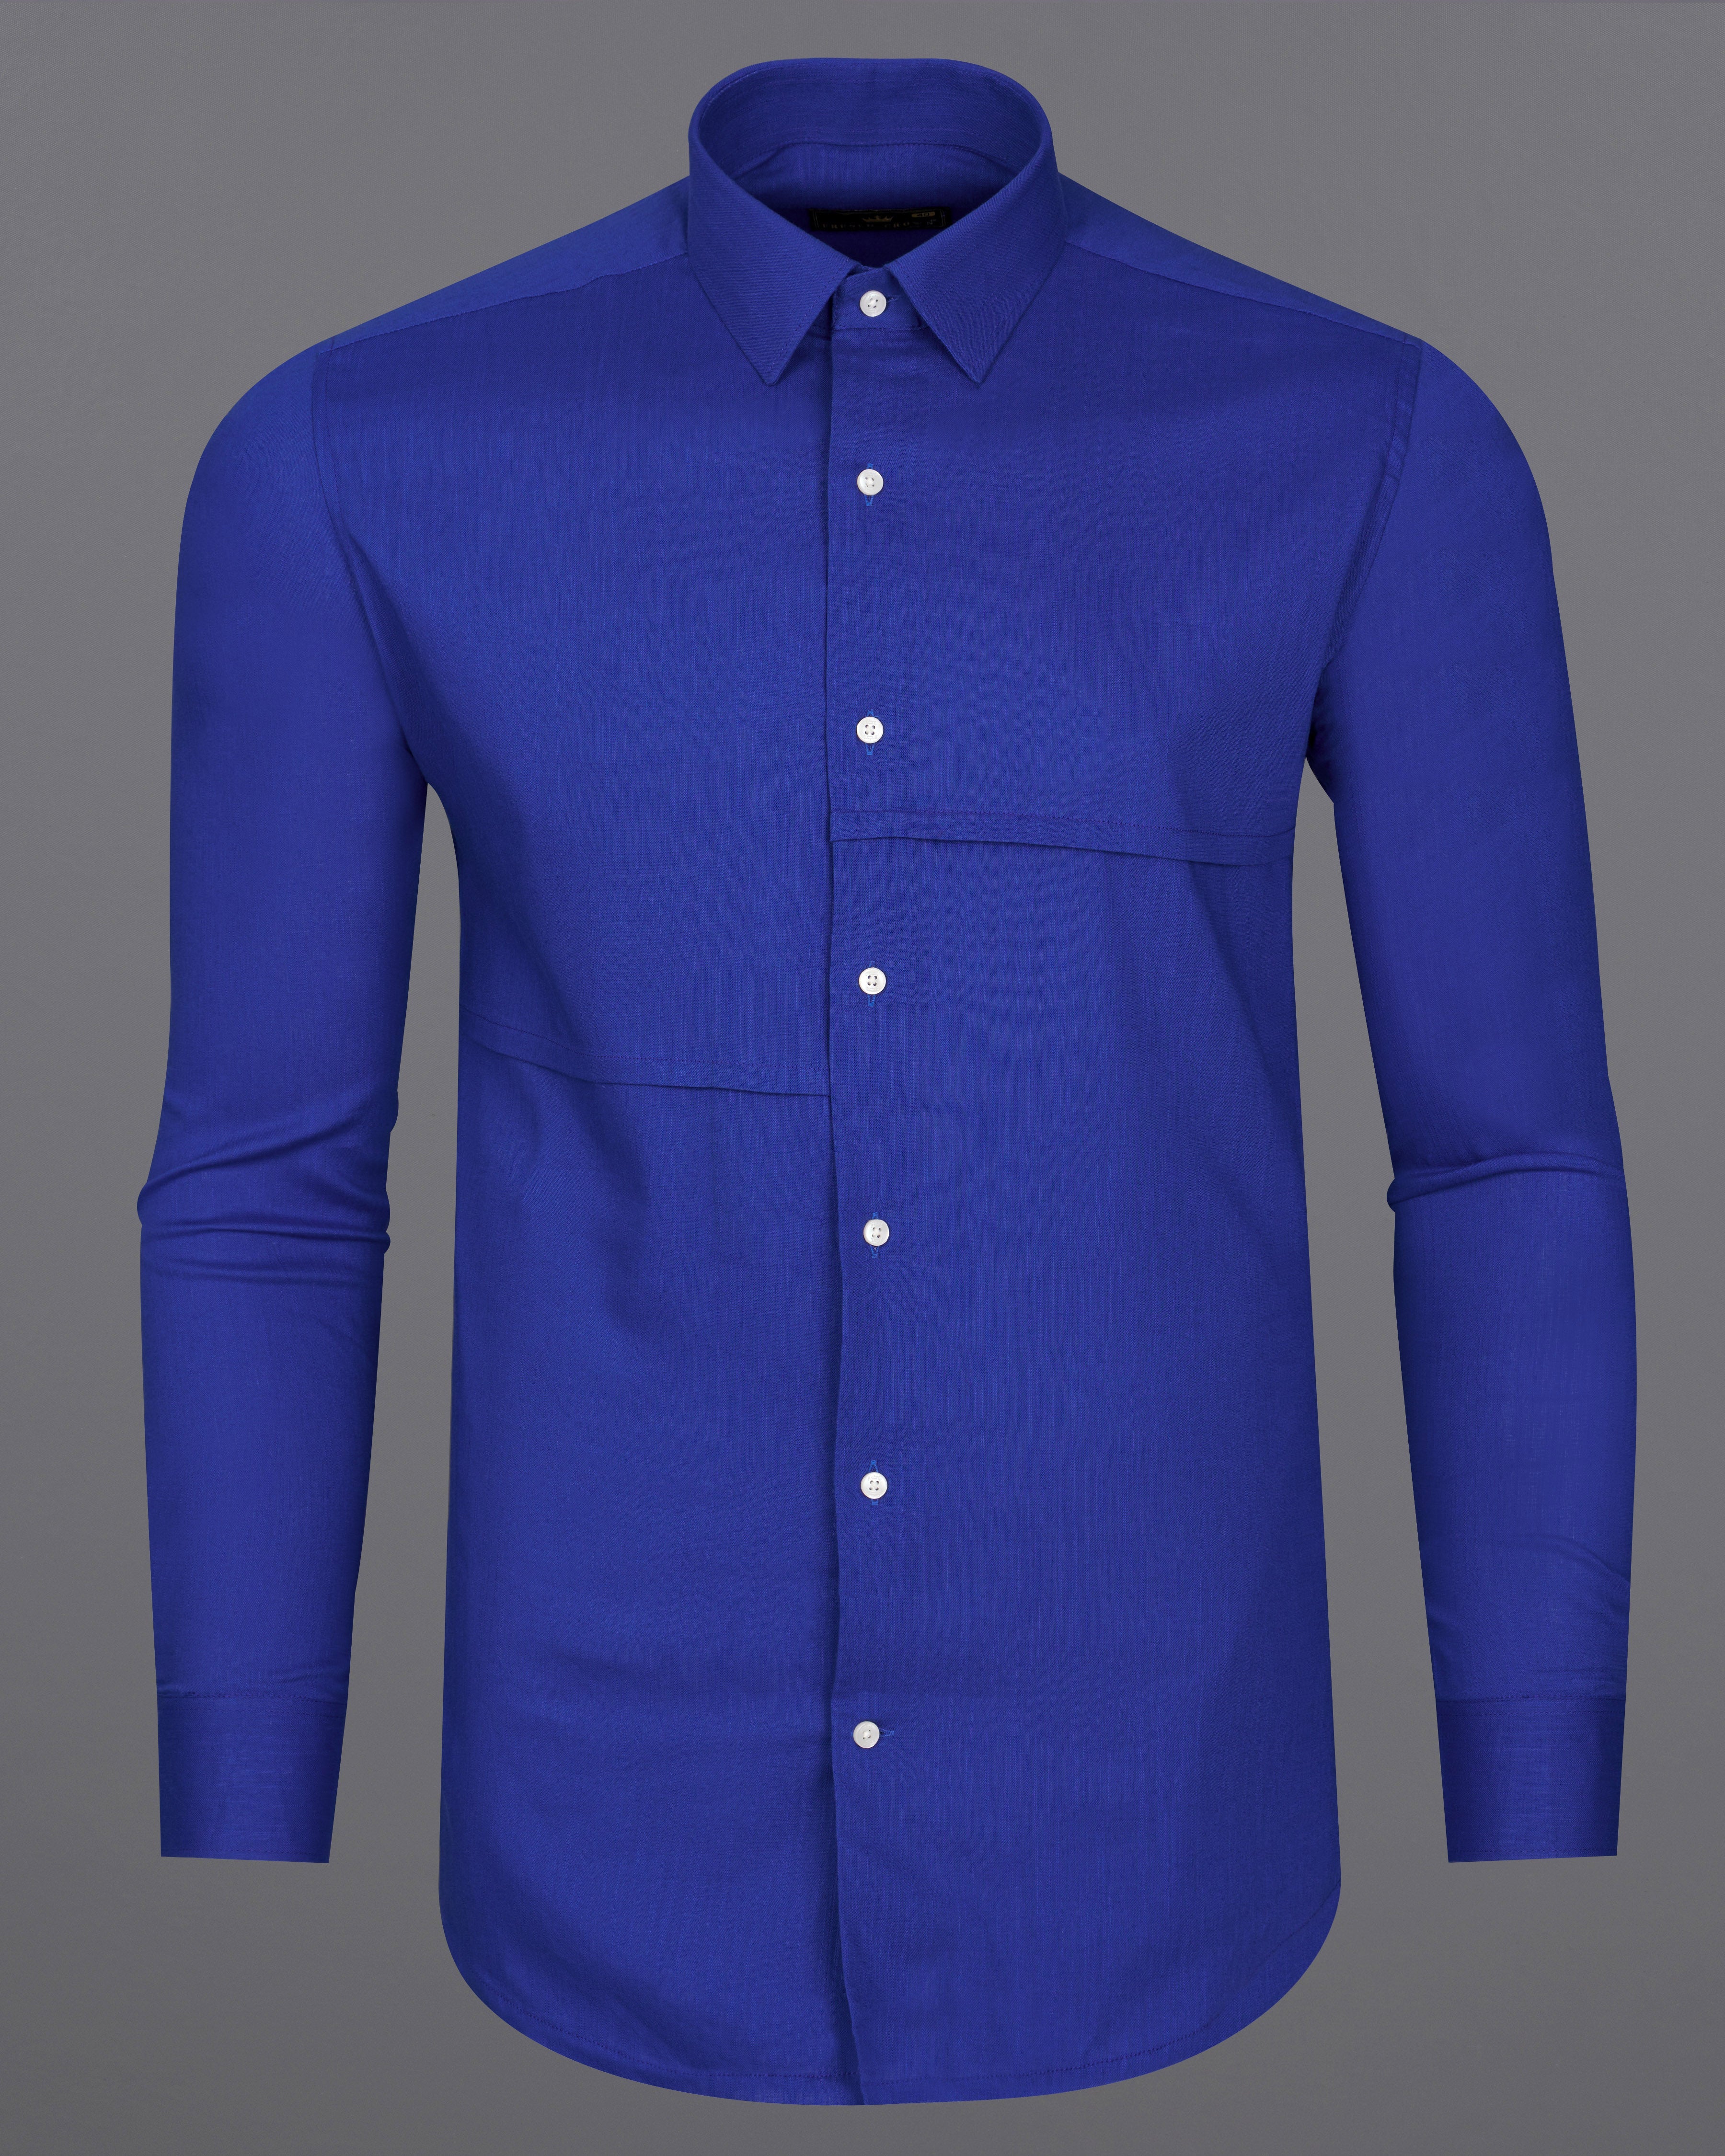 Meteorite Blue Premium Cotton Designer Shirt 9268-P356-38,9268-P356-H-38,9268-P356-39,9268-P356-H-39,9268-P356-40,9268-P356-H-40,9268-P356-42,9268-P356-H-42,9268-P356-44,9268-P356-H-44,9268-P356-46,9268-P356-H-46,9268-P356-48,9268-P356-H-48,9268-P356-50,9268-P356-H-50,9268-P356-52,9268-P356-H-52